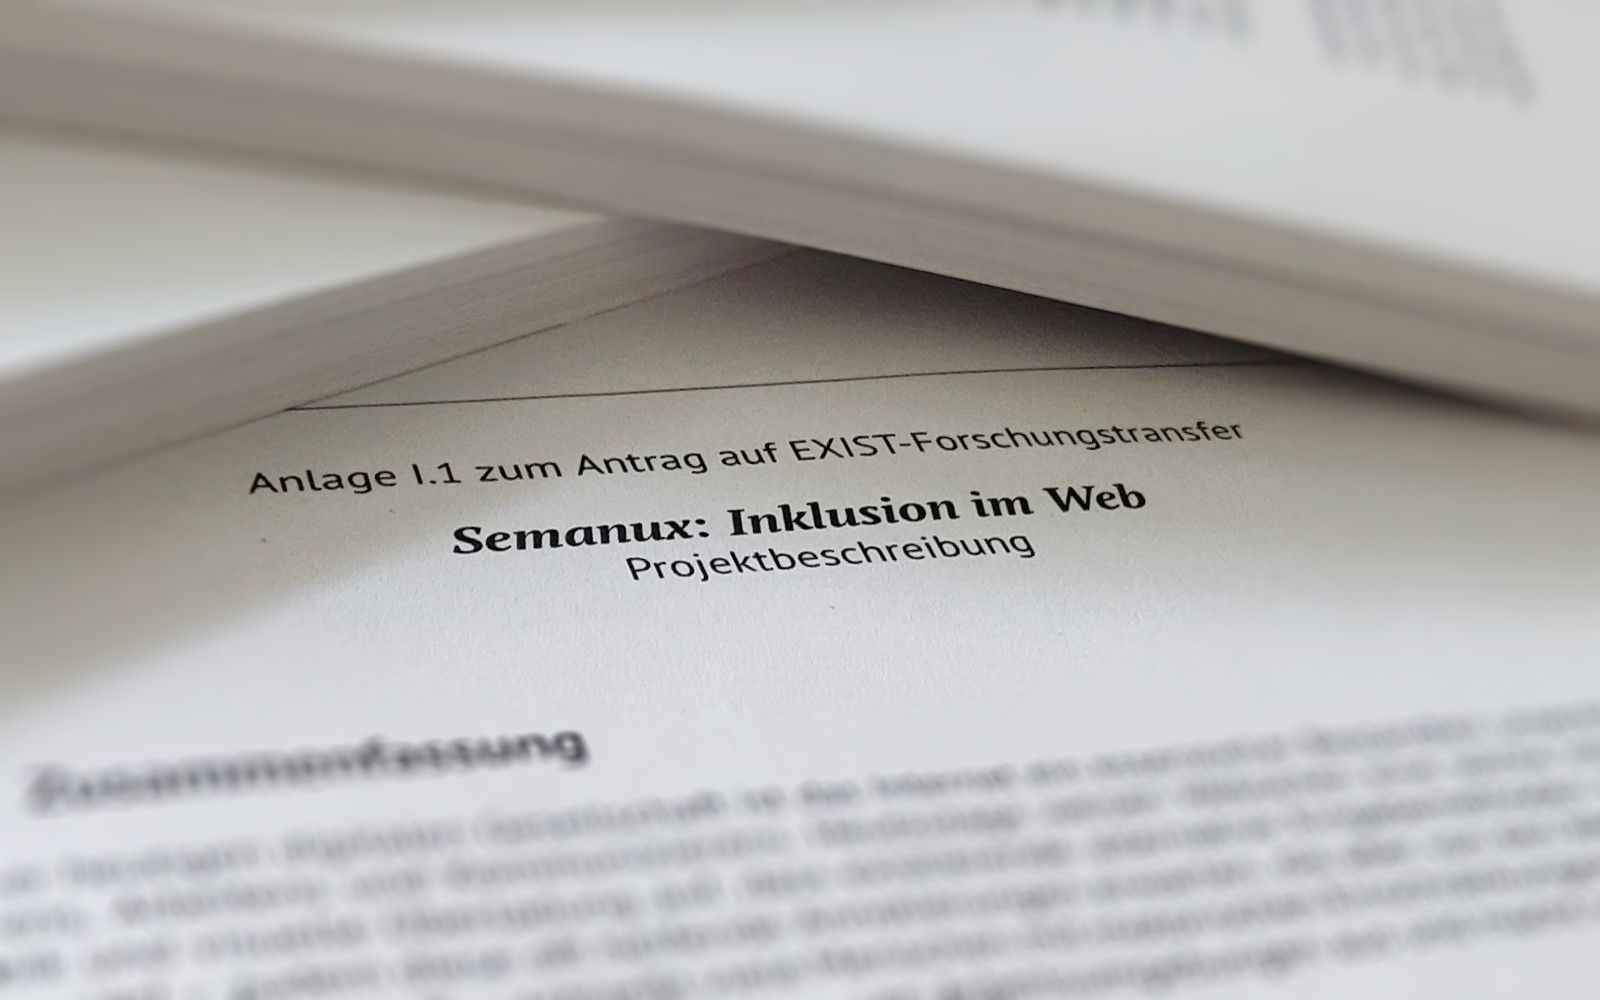 Nahaufnahme eines Dokuments mit der Überschrift "Anlage I.1 zum Antrag auf EXIST-Forschungstransfer. Semanux: Inklusion im Web. Projektbeschreibung."